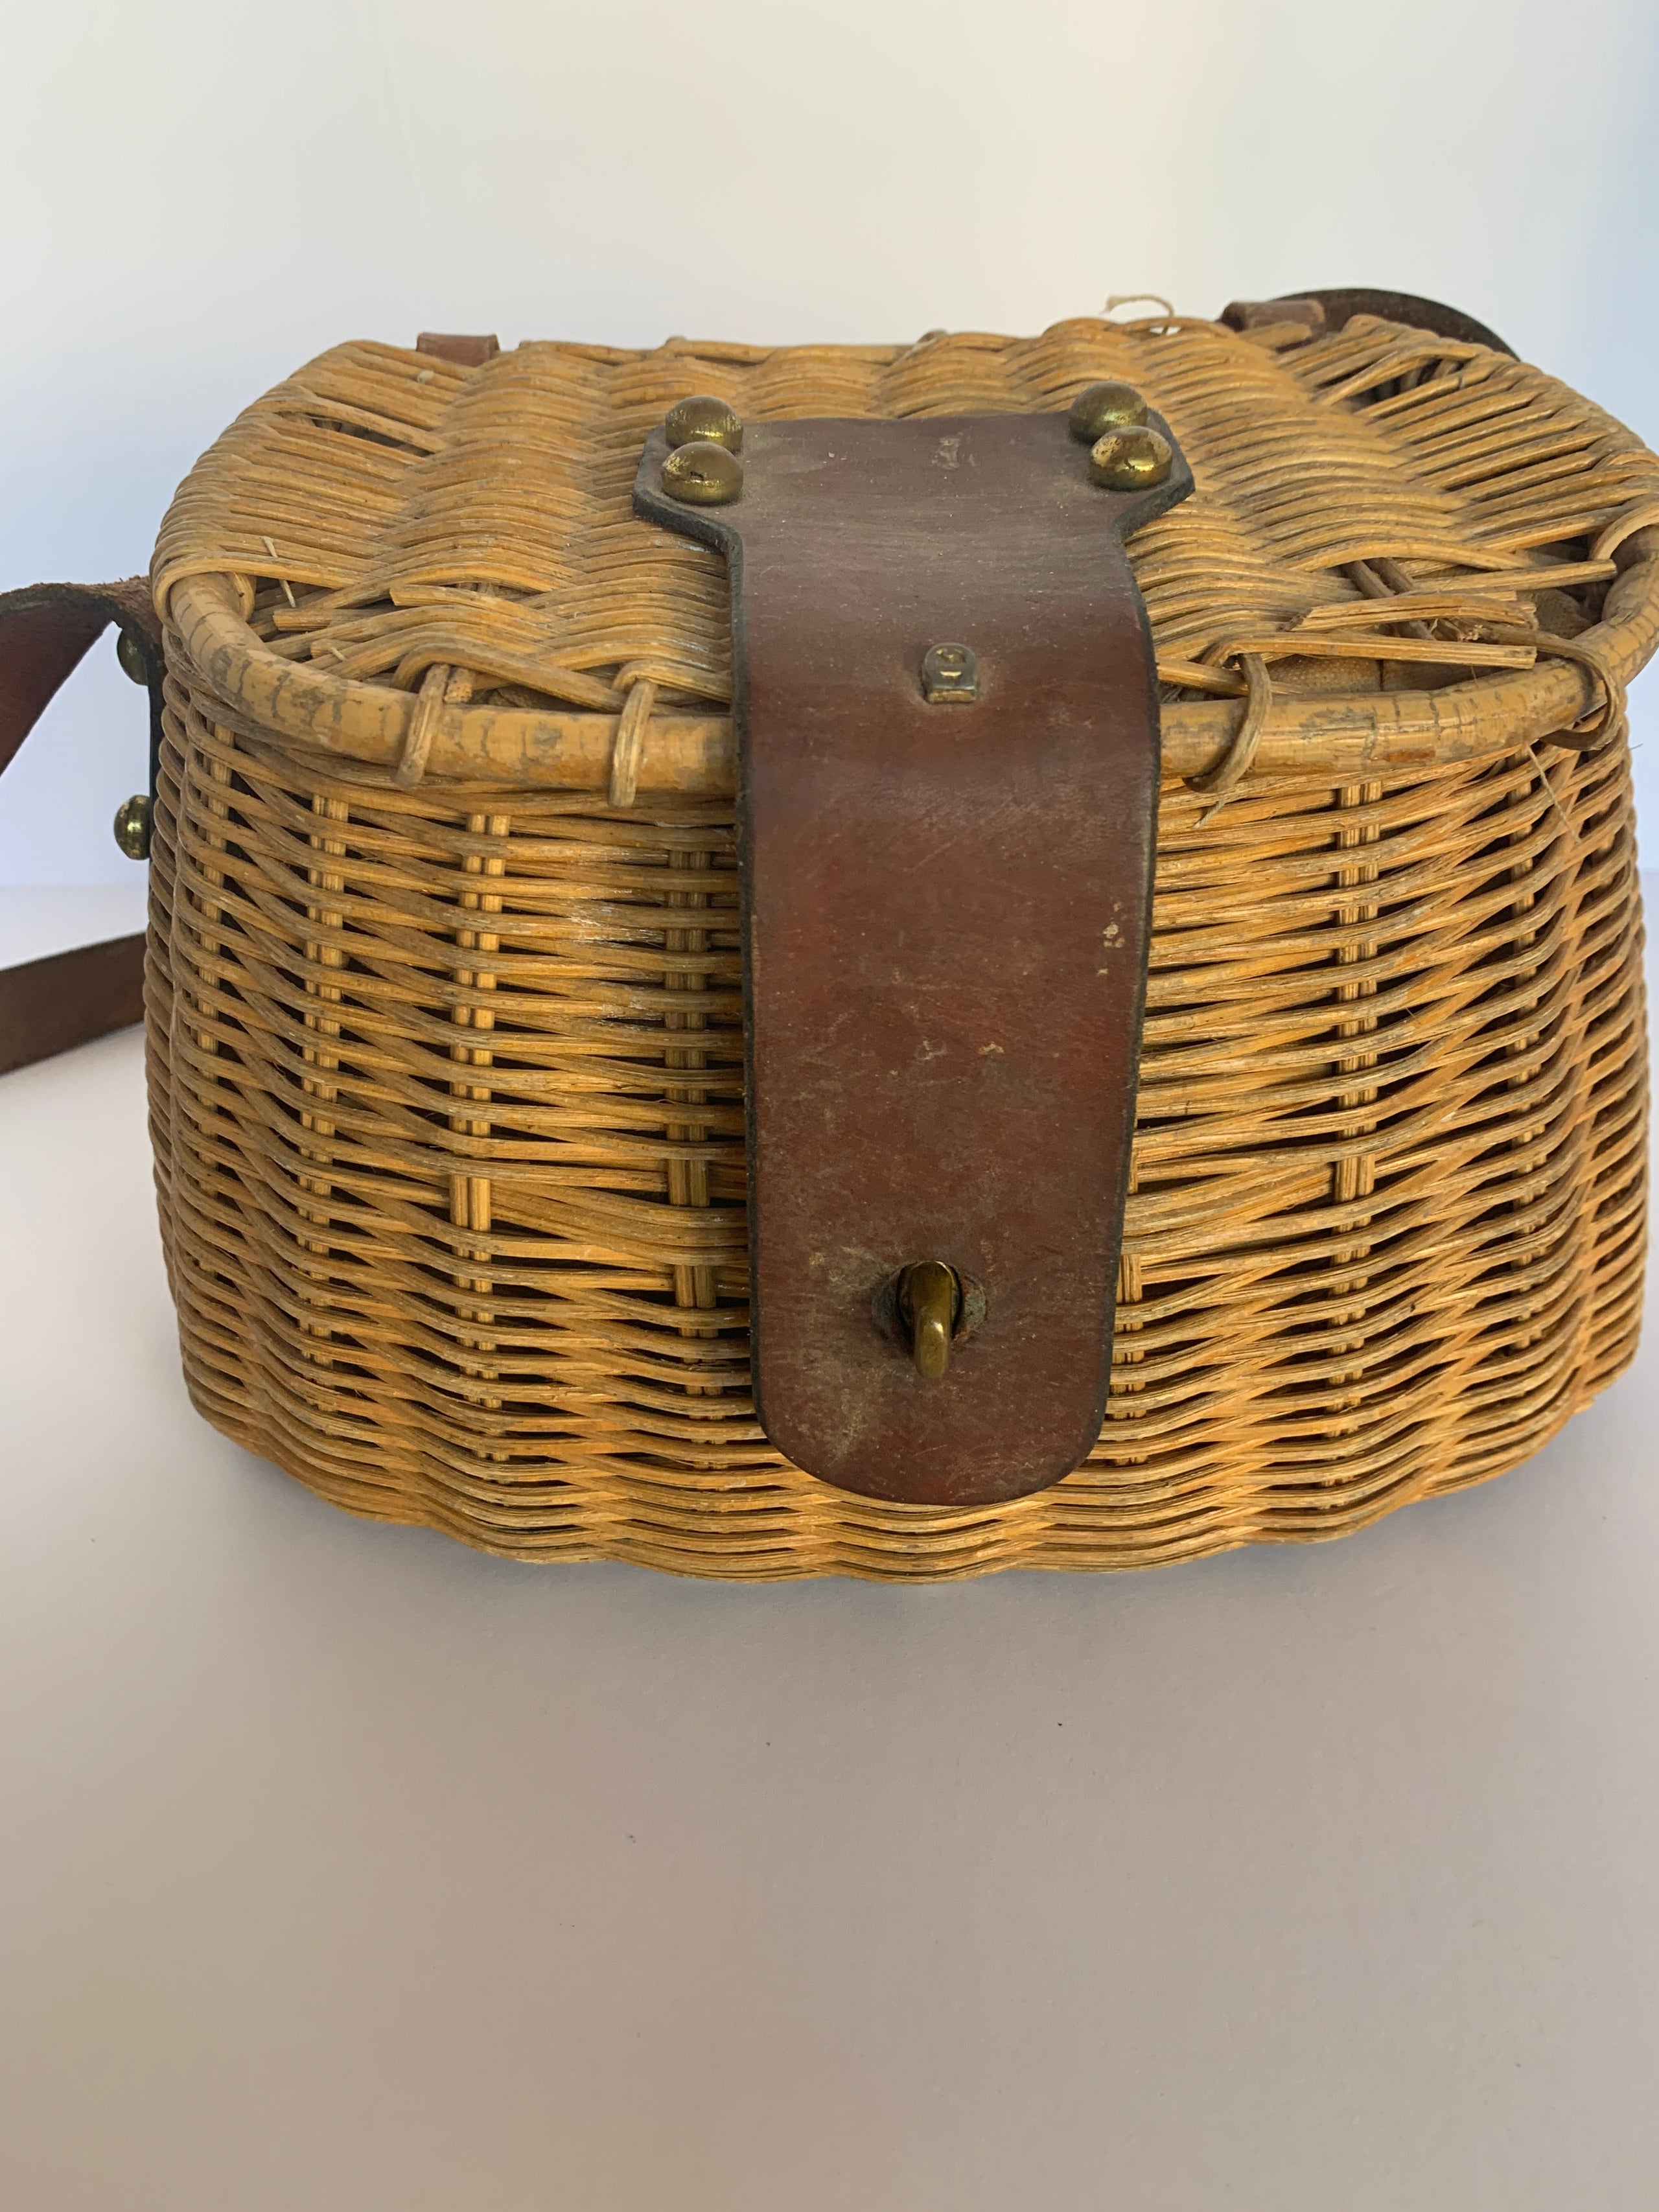 Vintage Fishing Creel Basket VintageWinter, 43% OFF